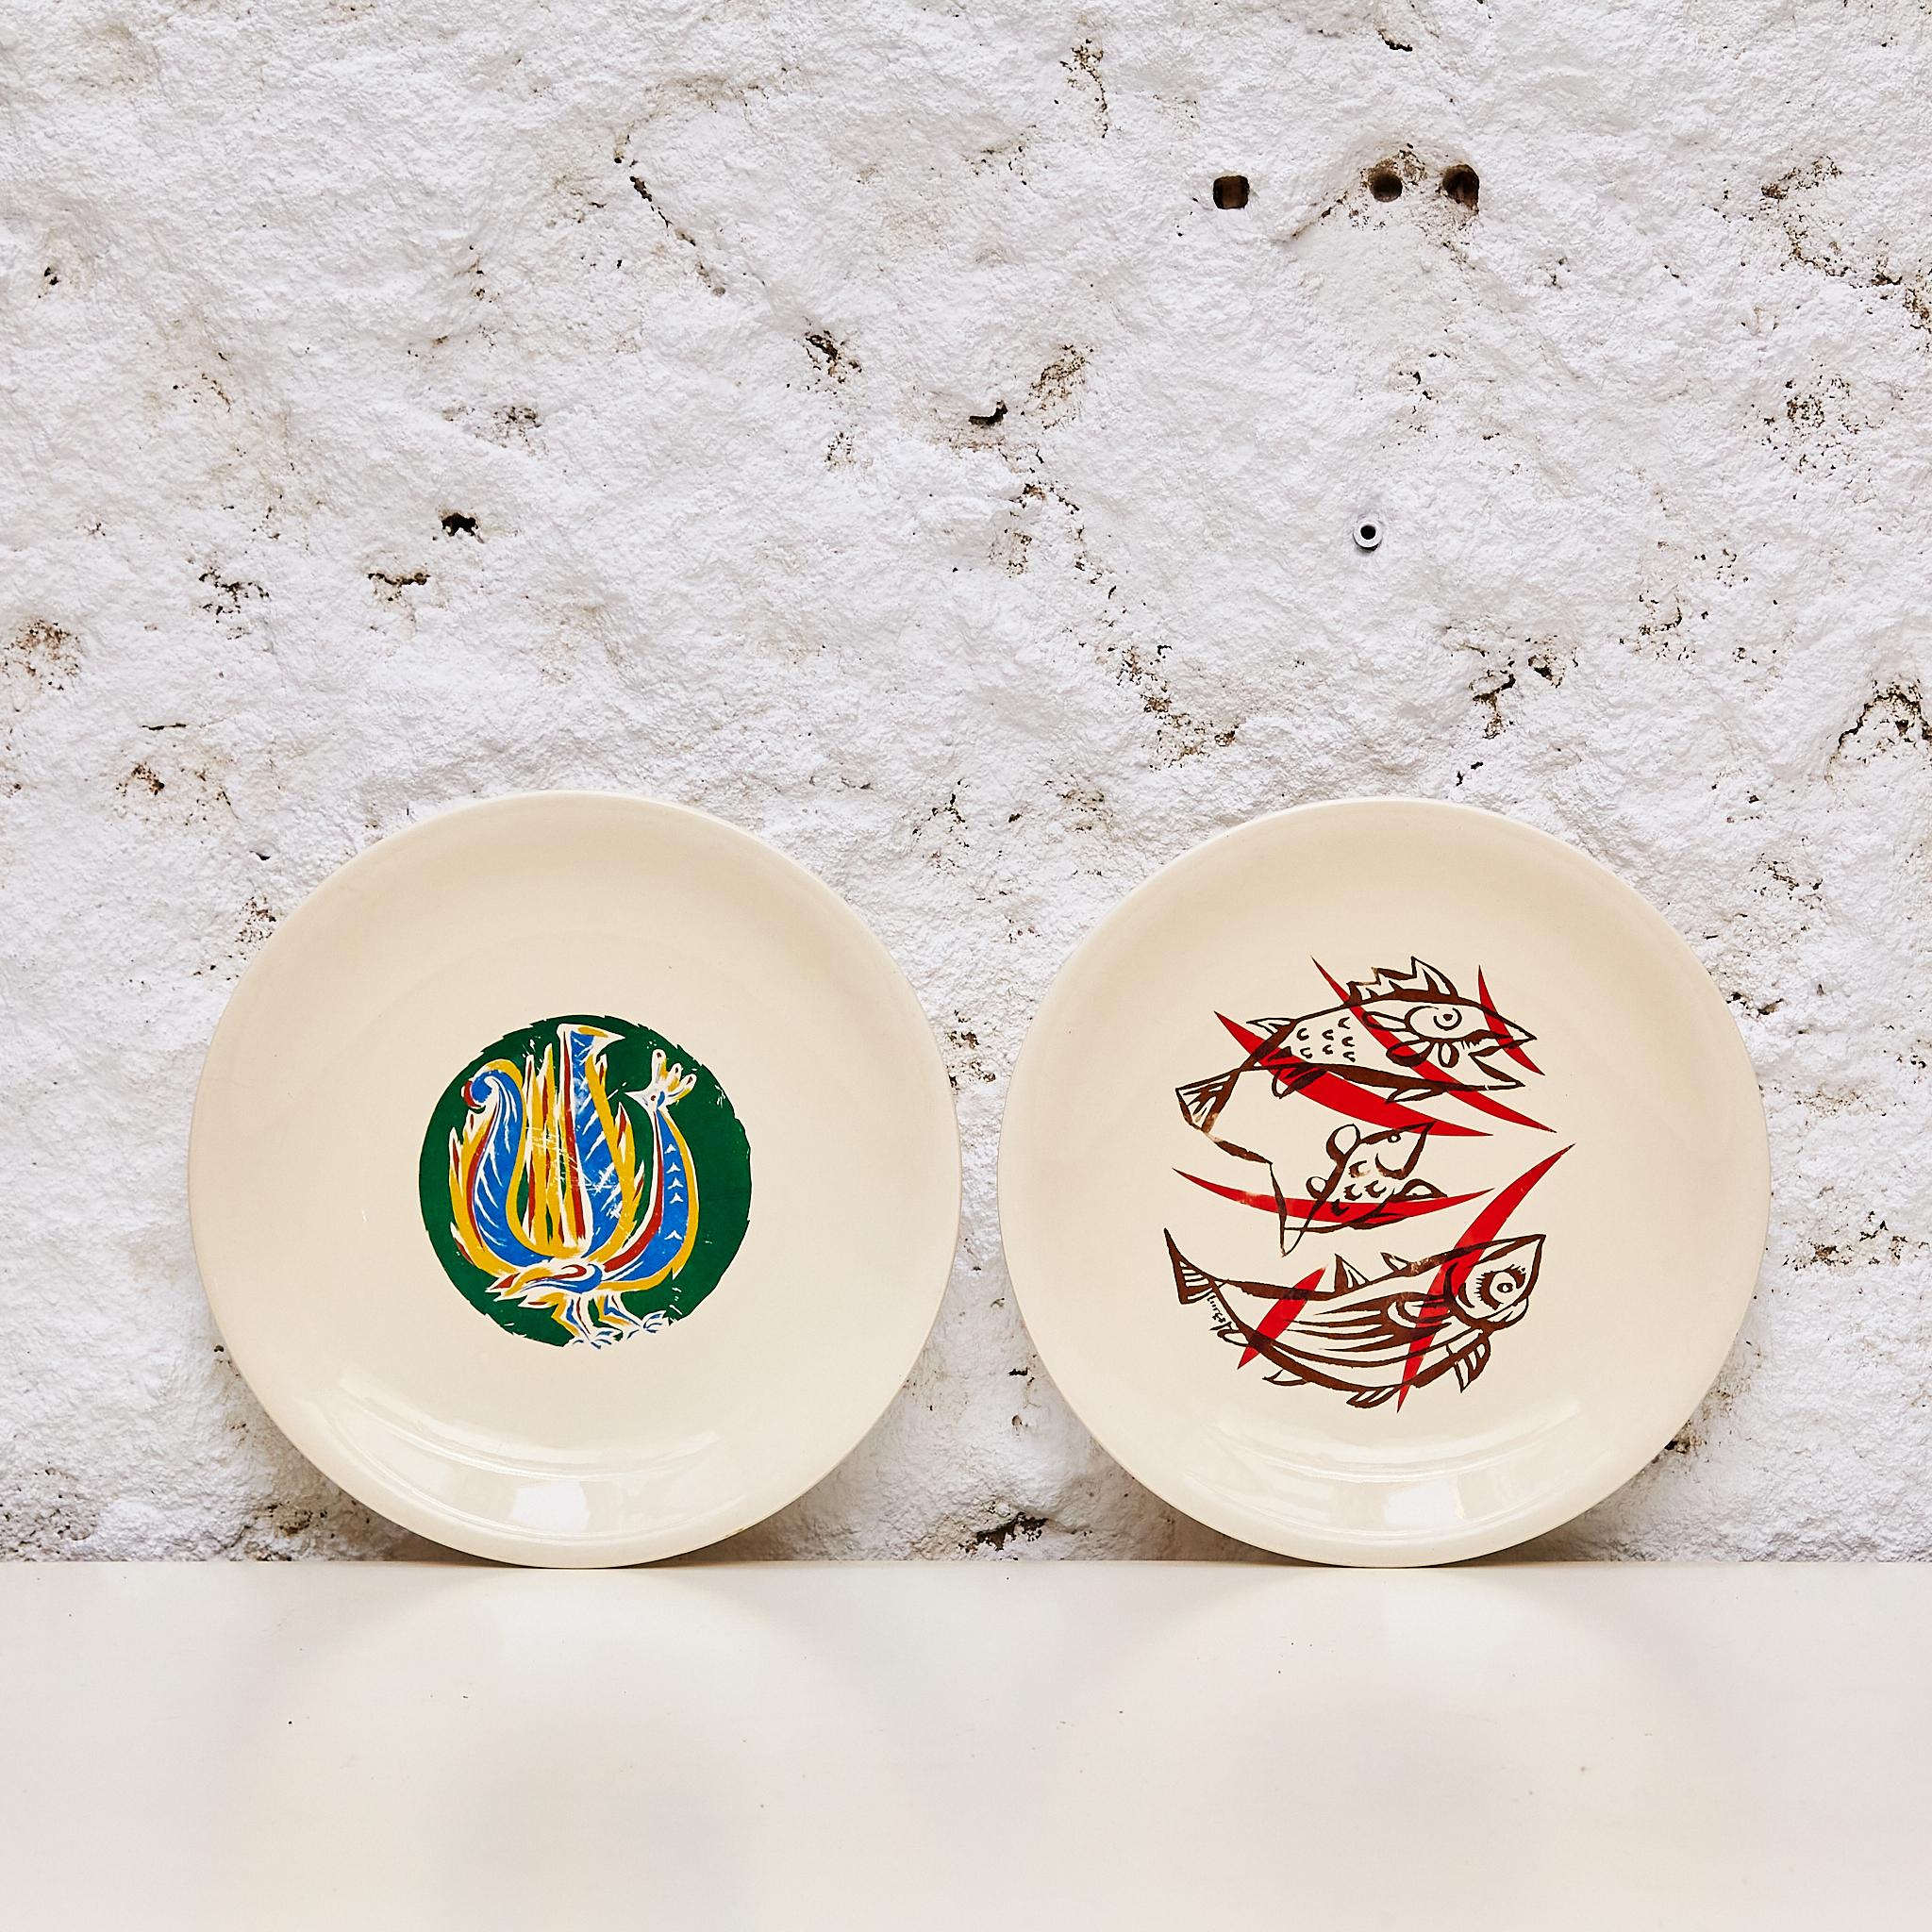 Experimenta la artesanía refinada con este cautivador juego de dos platos de Marc Saint-Seans, originario de la Francia de los años 50. Cada plato lleva la firma y el sello del artista, que encarna el encanto intemporal de la creación artística.

De